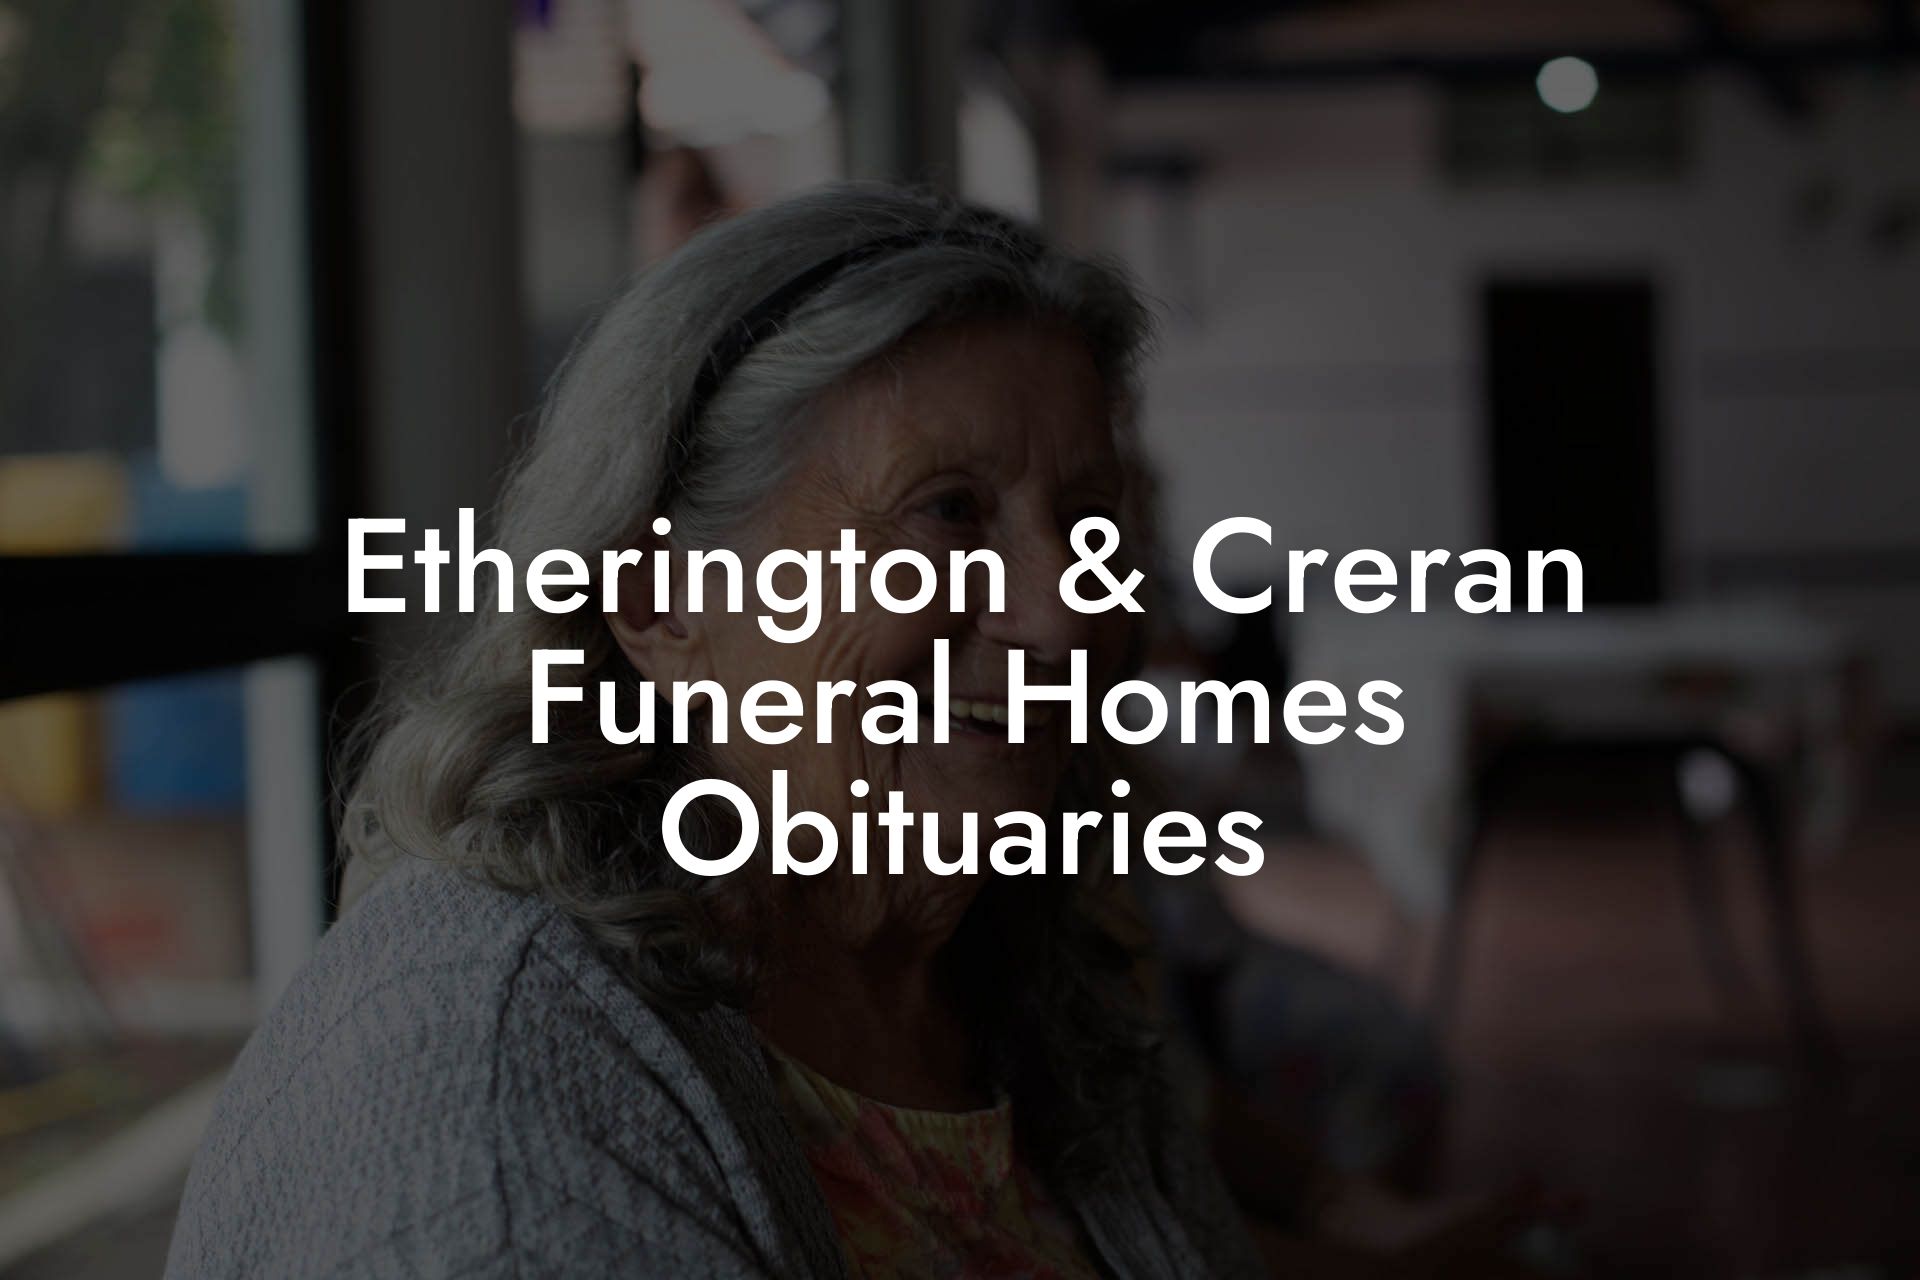 Etherington & Creran Funeral Homes Obituaries